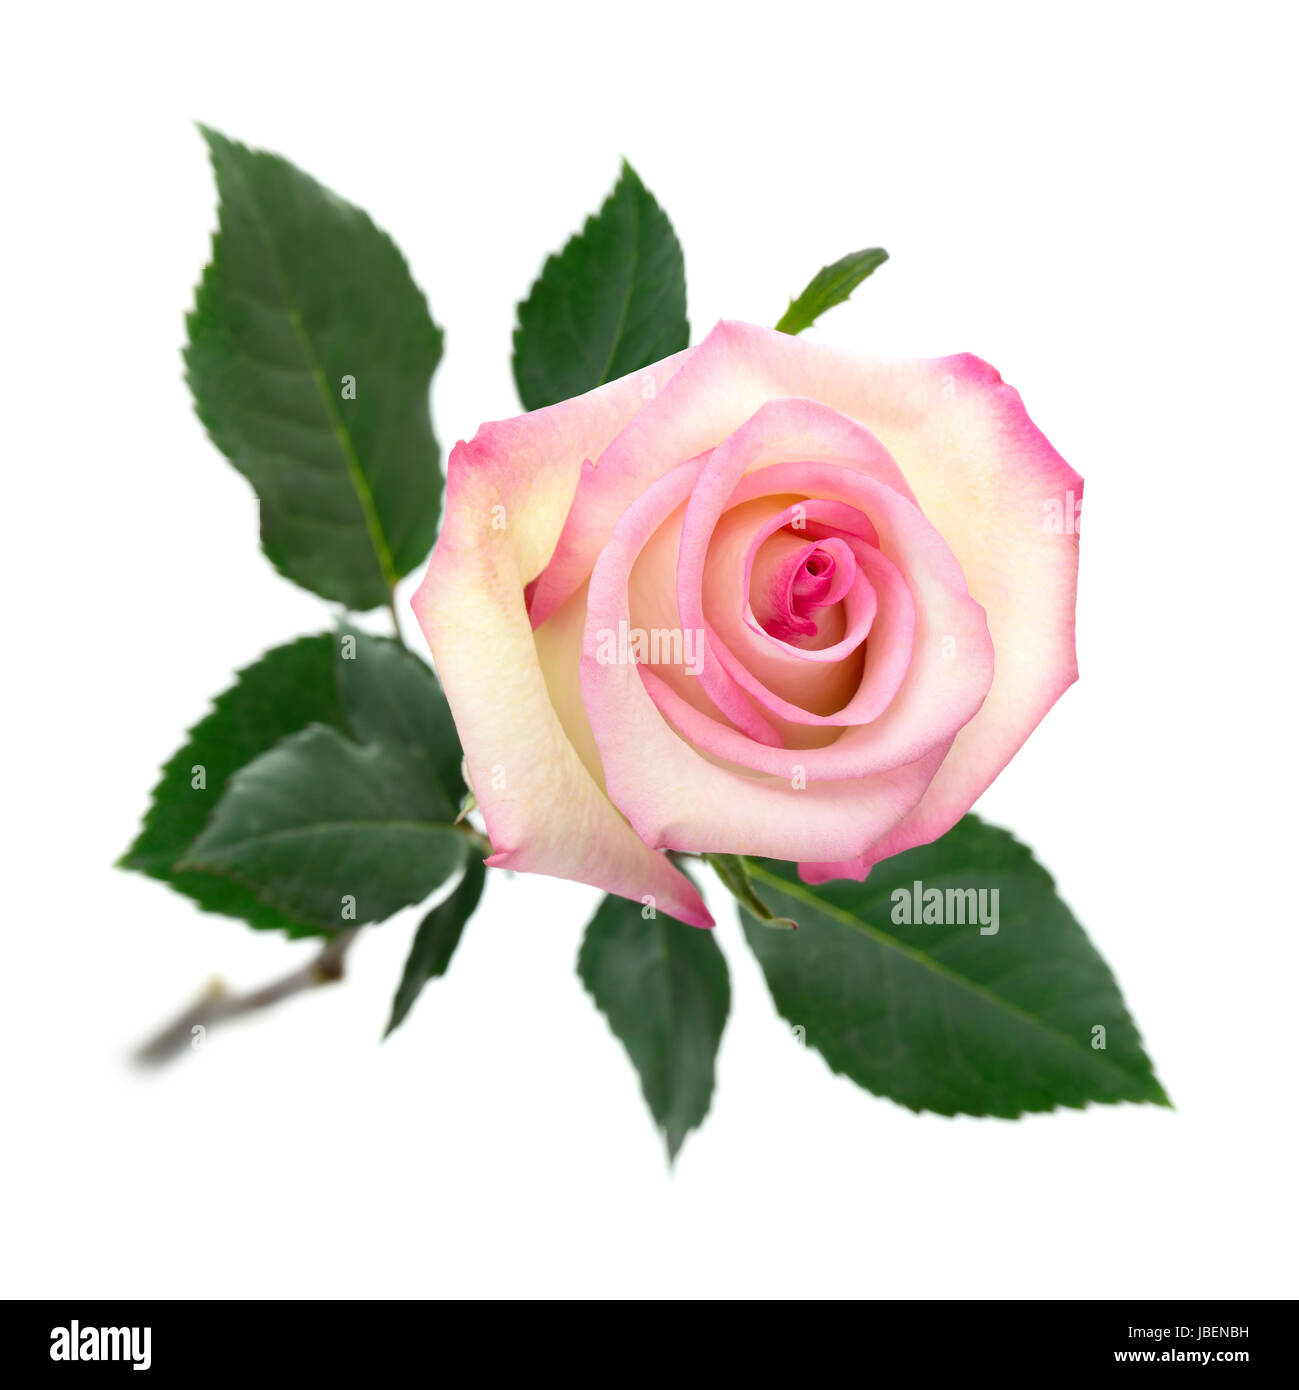 Eine aufgeblühte rosa Rose mit Stängel und Blättern auf rein-weißem Hintergrund Stock Photo